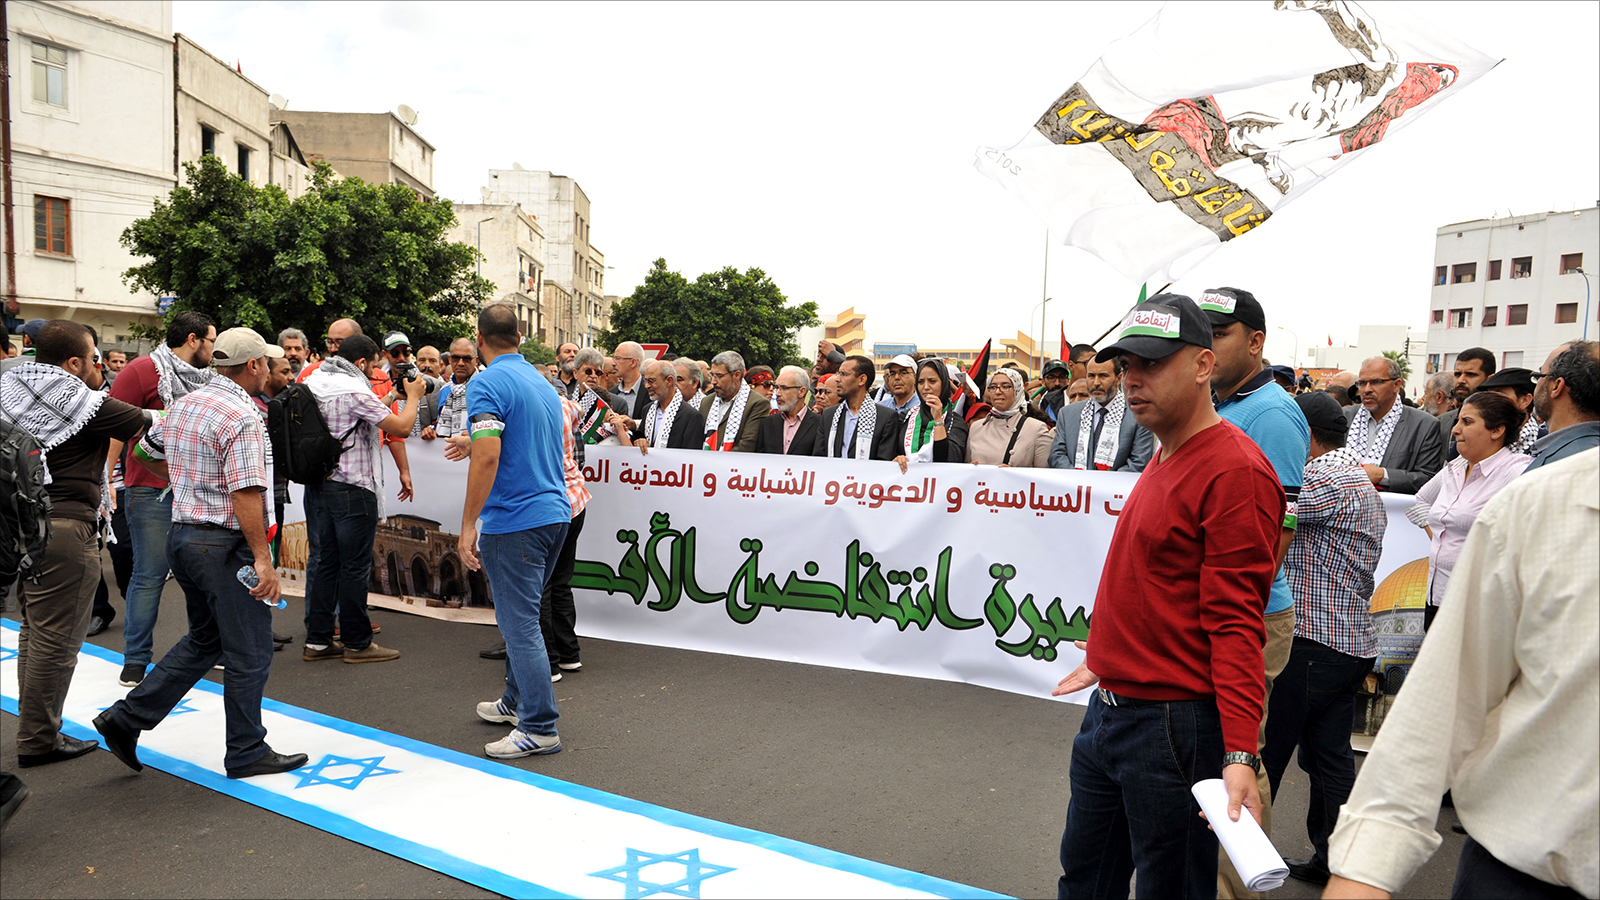 تنشط في المغرب فعاليات كثيرة مناهضة للتطبيع مع إسرائيل وداعمة للقضية الفلسطينية (الجزيرة)